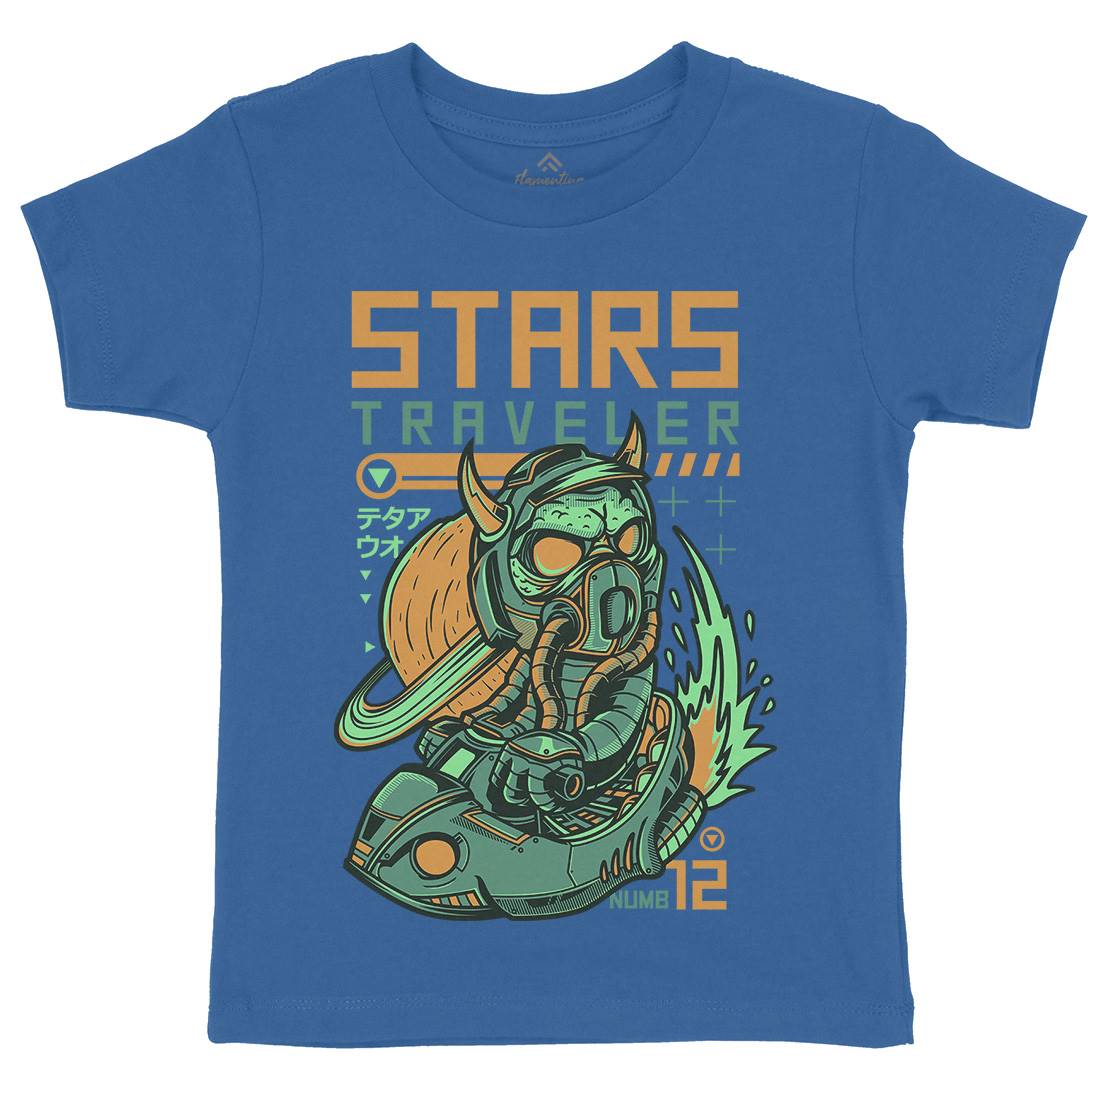 Stars Traveller Kids Crew Neck T-Shirt Space D836